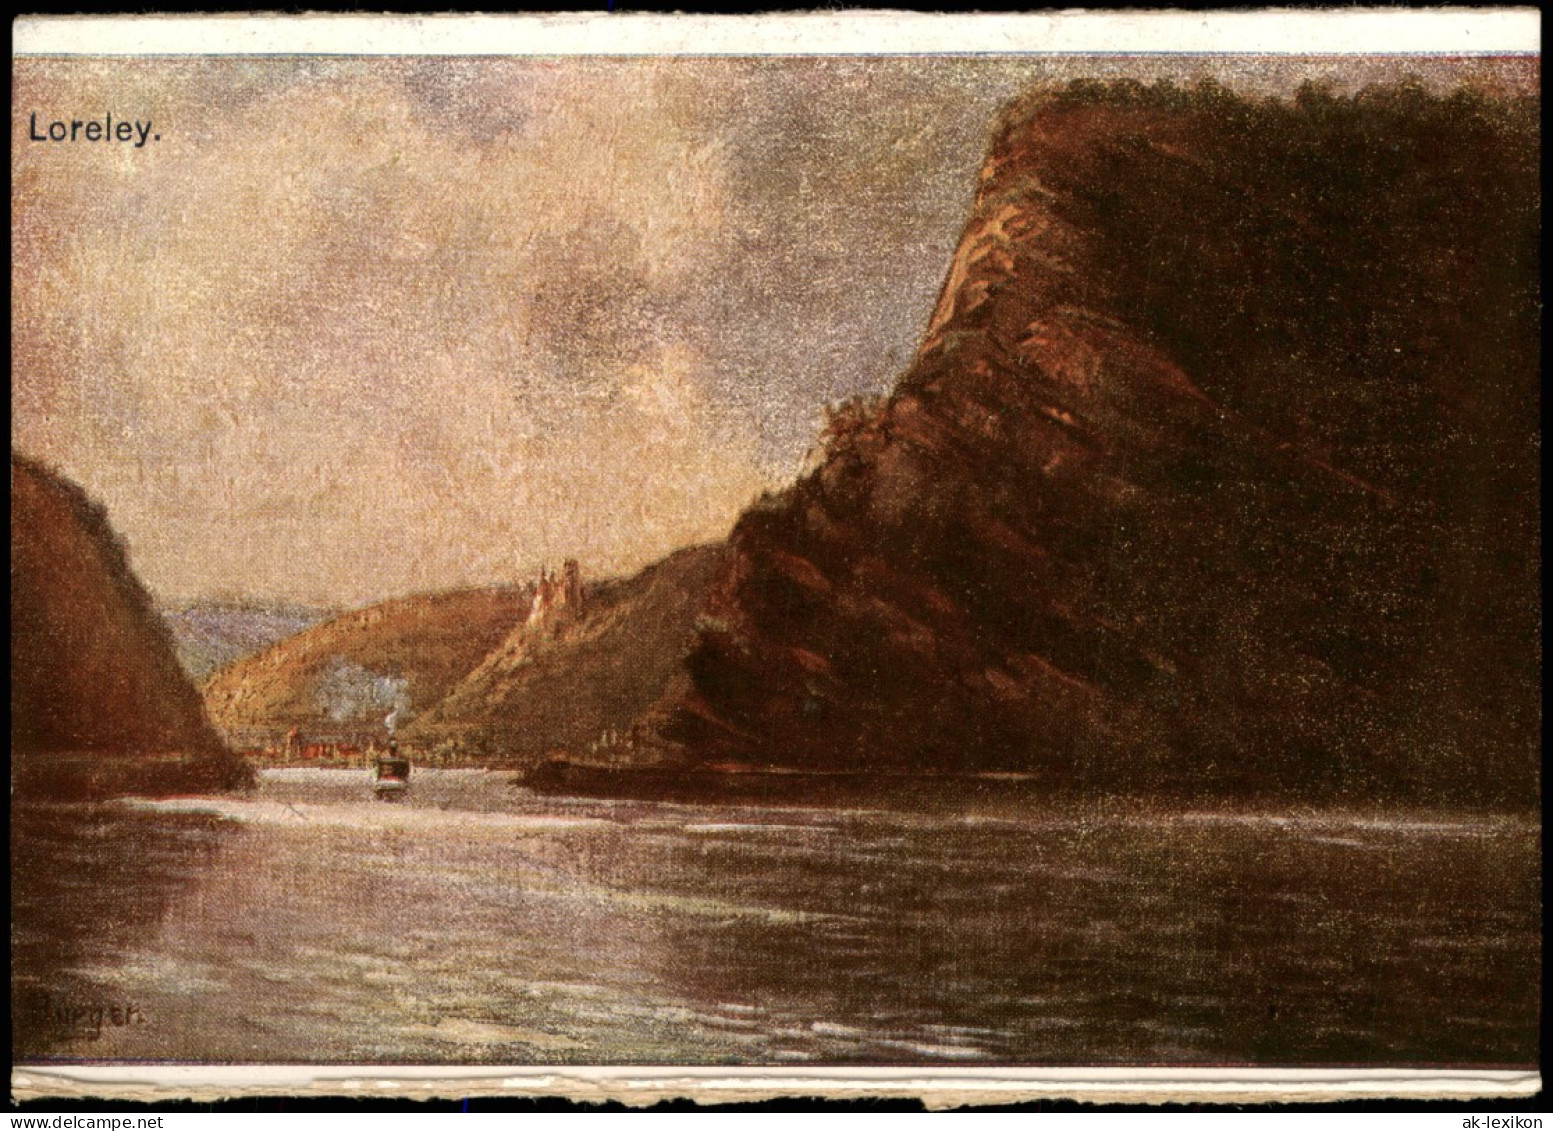 Ansichtskarte St. Goarshausen Loreleyfelsen Am Rhein, Künstlerkarte 1913 - Loreley